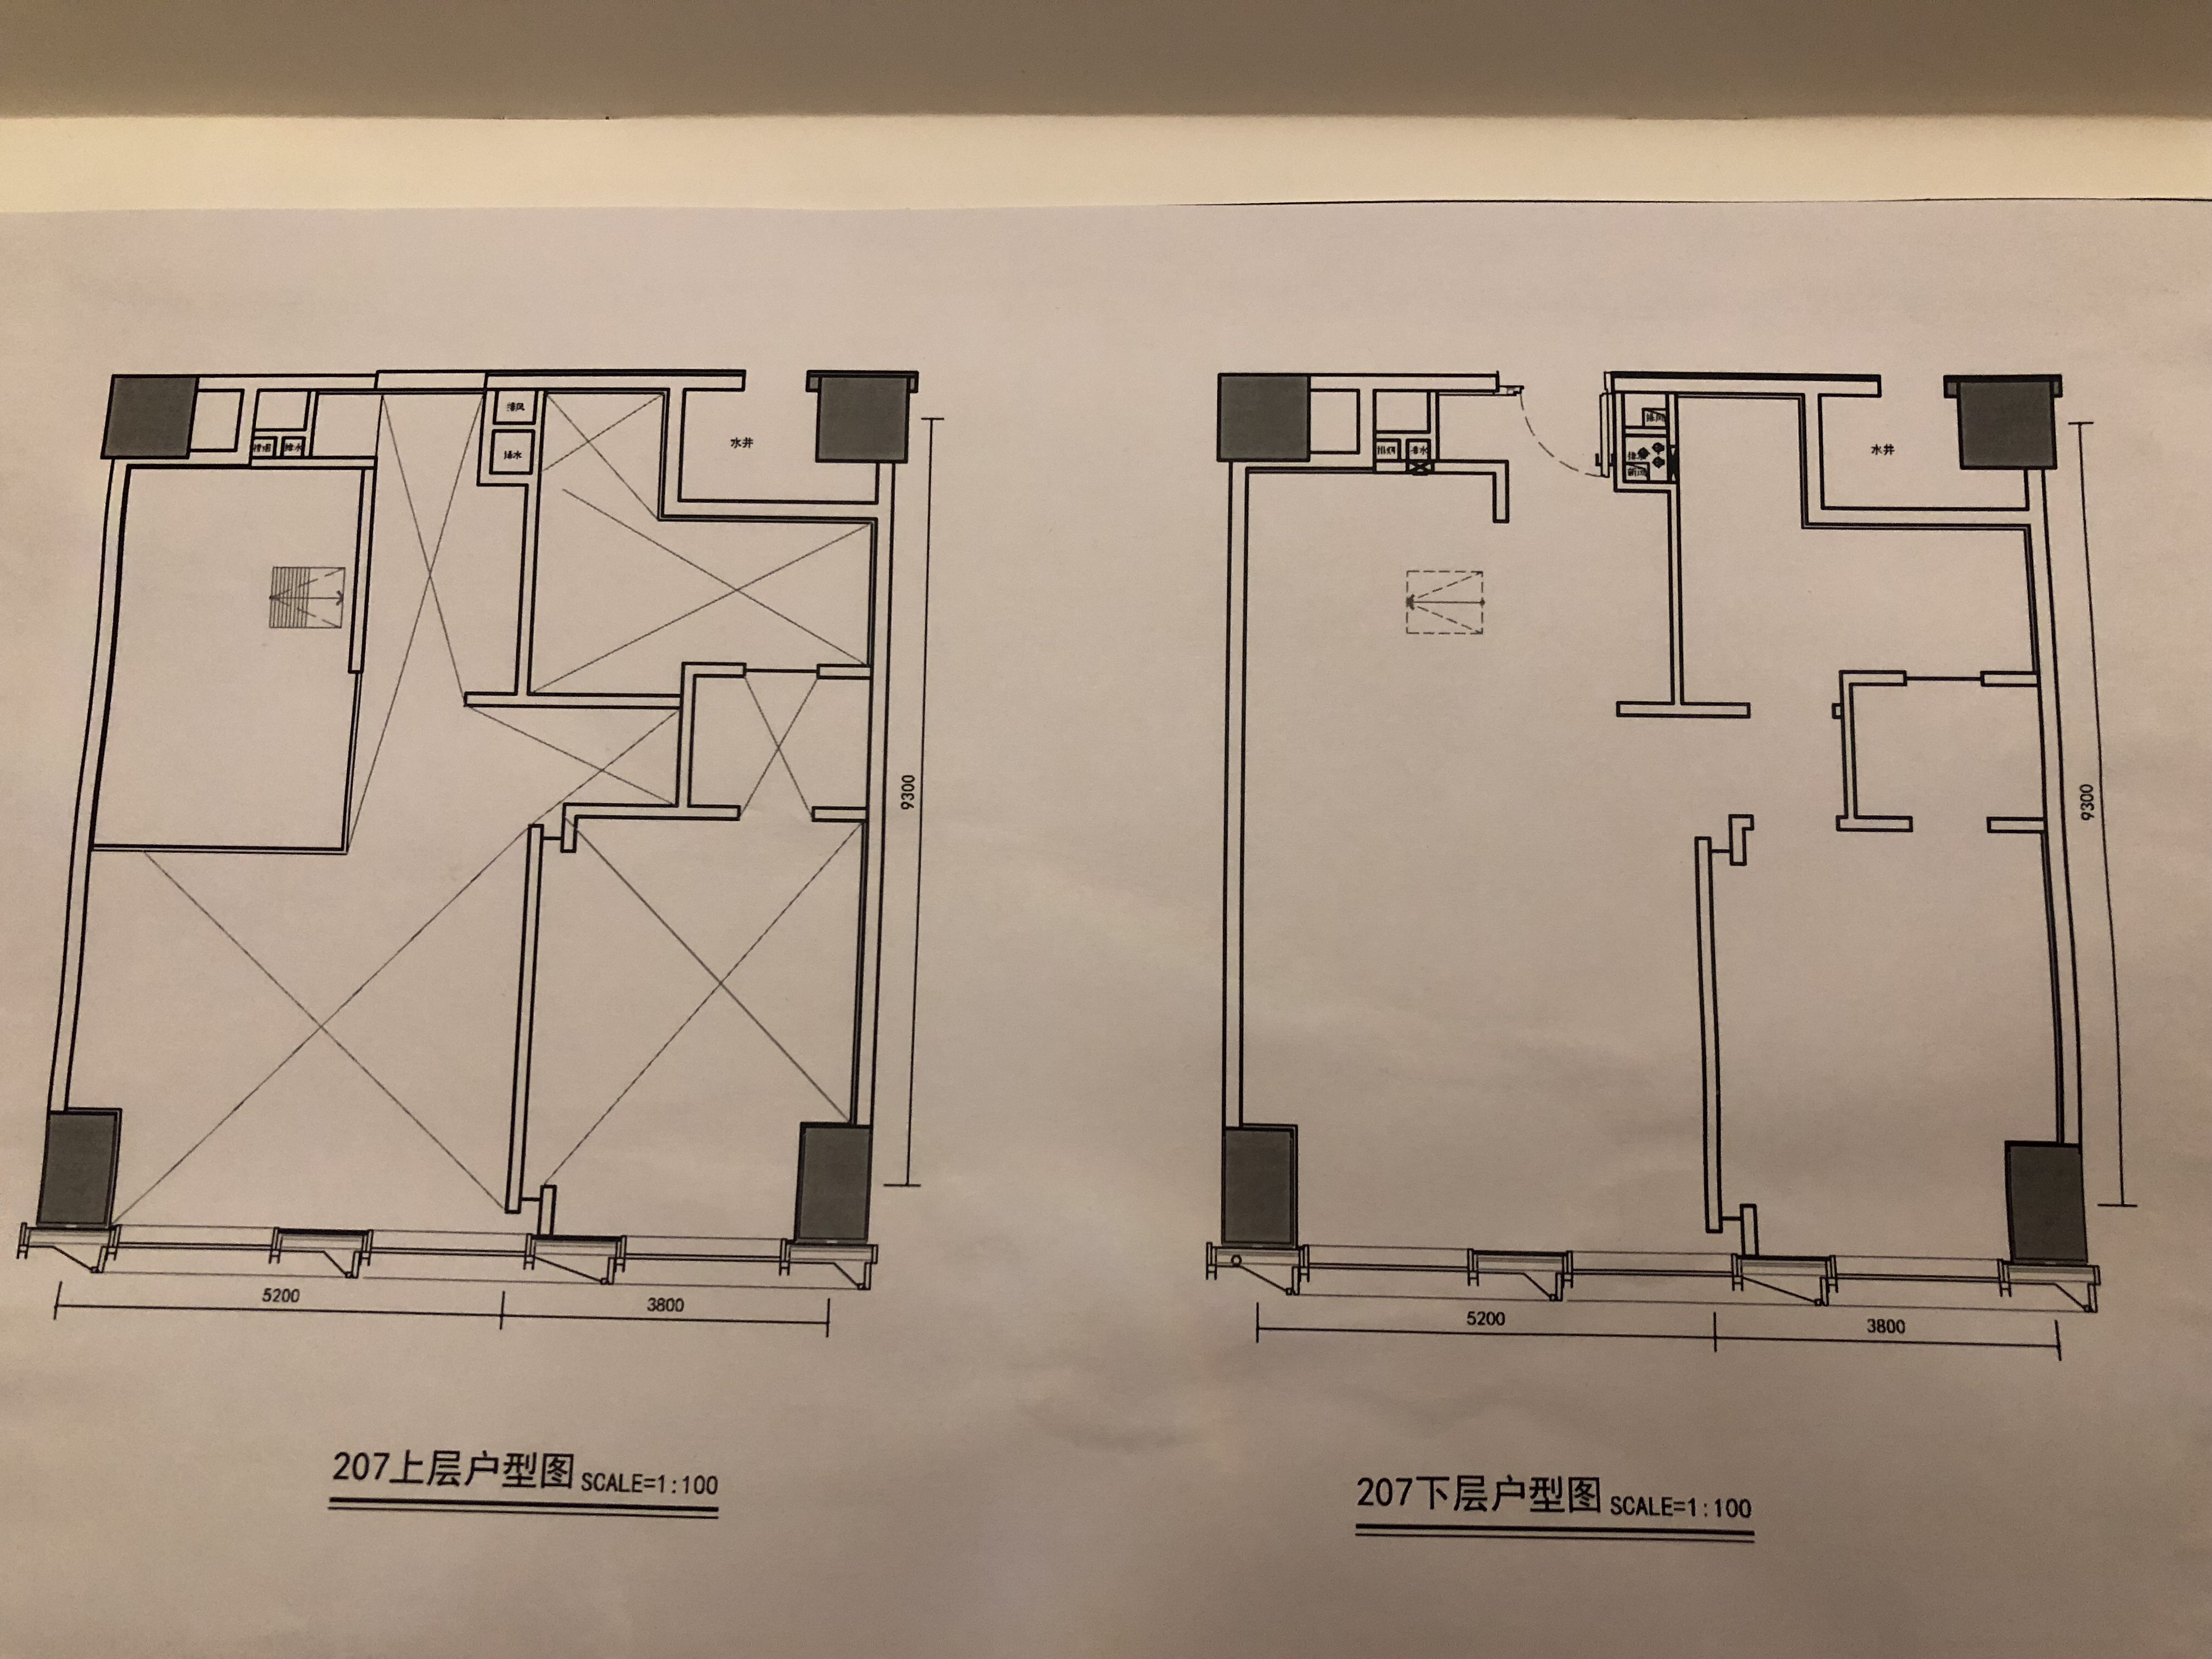 thiết kế nội thất chung cư tại Đà Nẵng Cải tạo chung cư China 7 1537719240